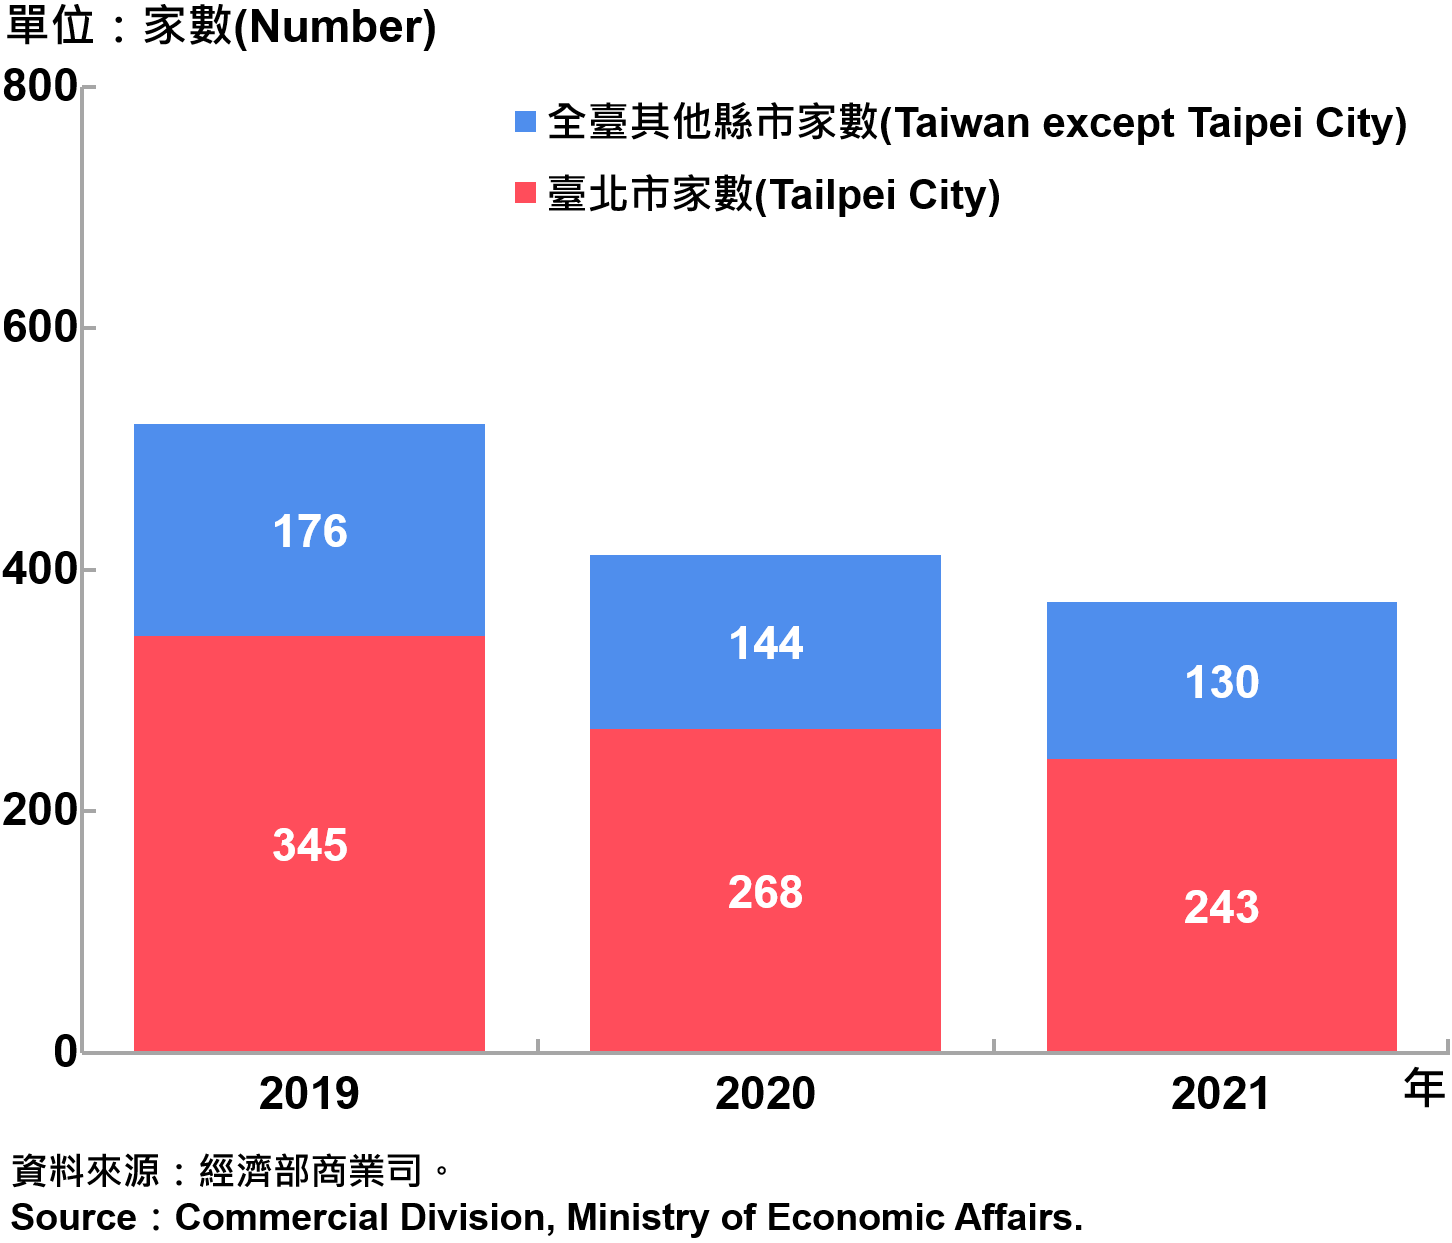 臺北市外商公司新設立家數—2021 Number of Newly Established Foreign Companies in Taipei City—2021